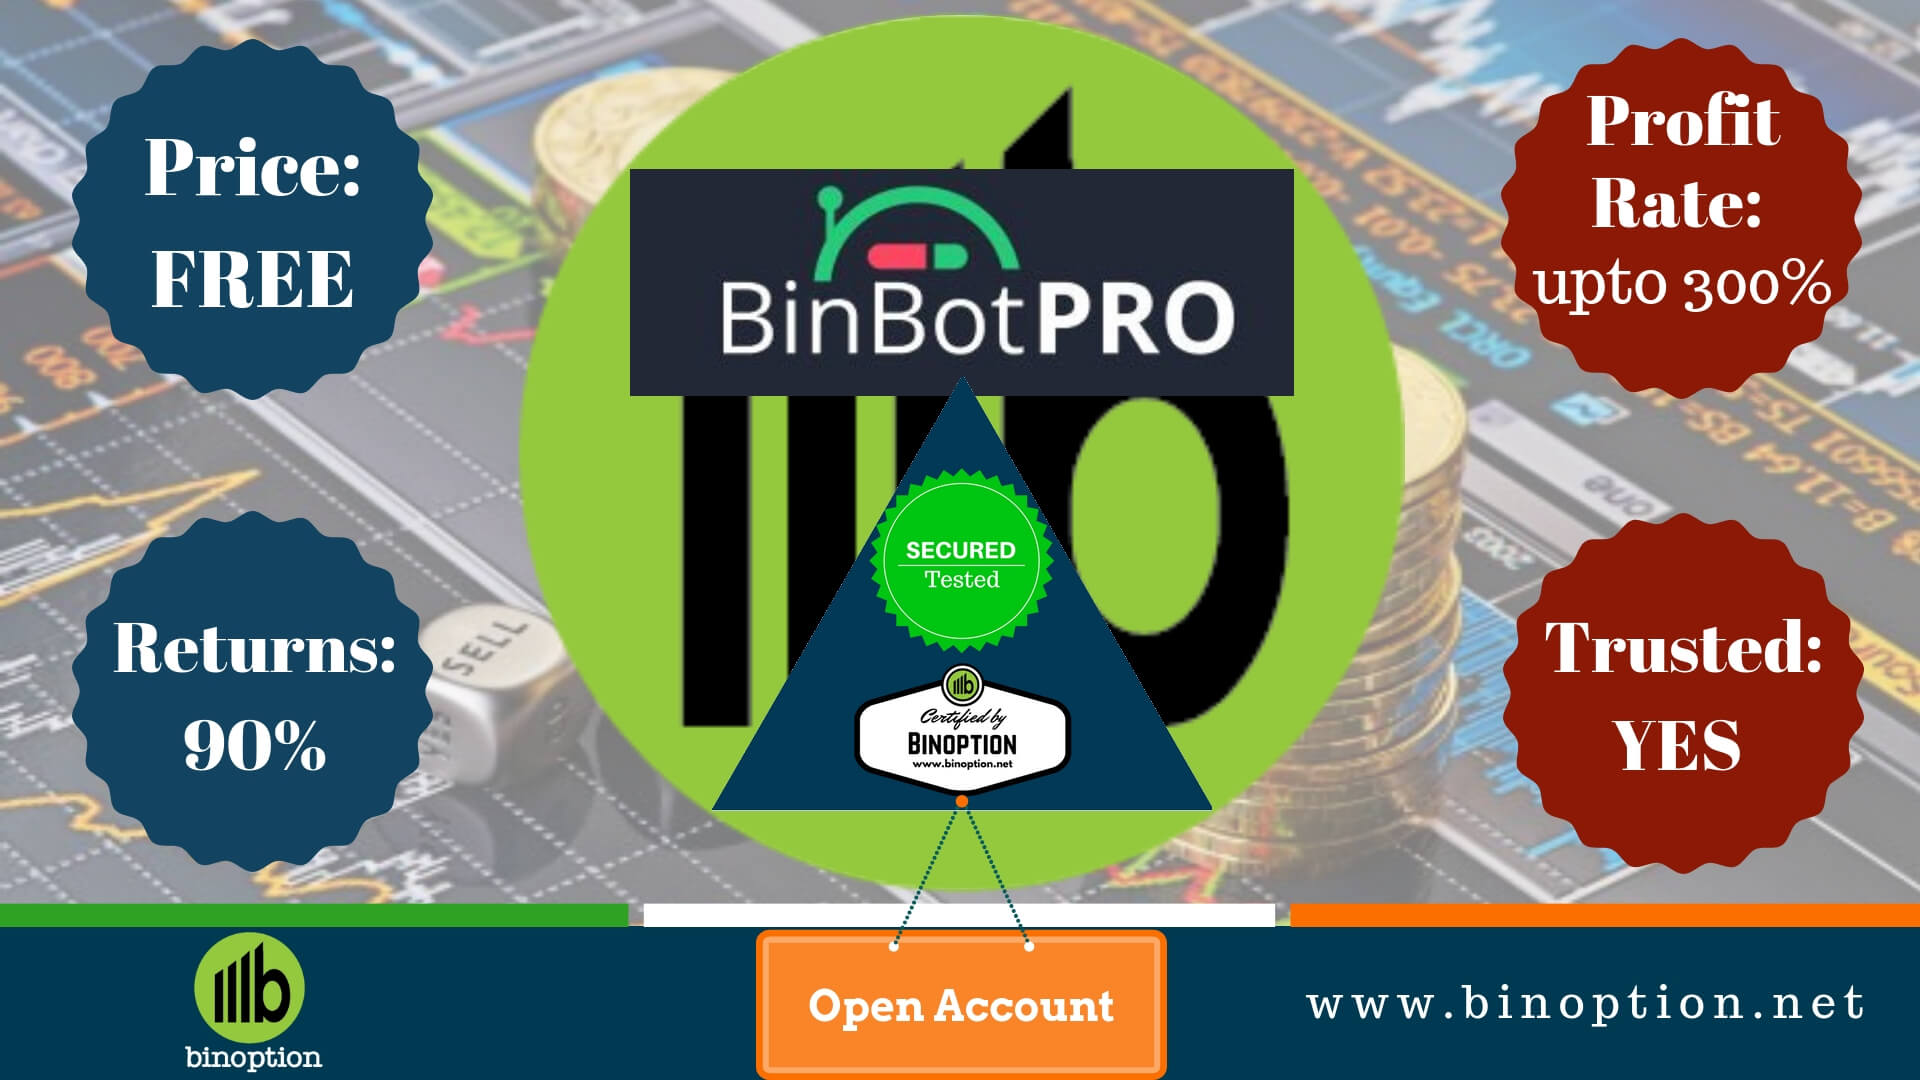 BinBot Pro Review - Binoption